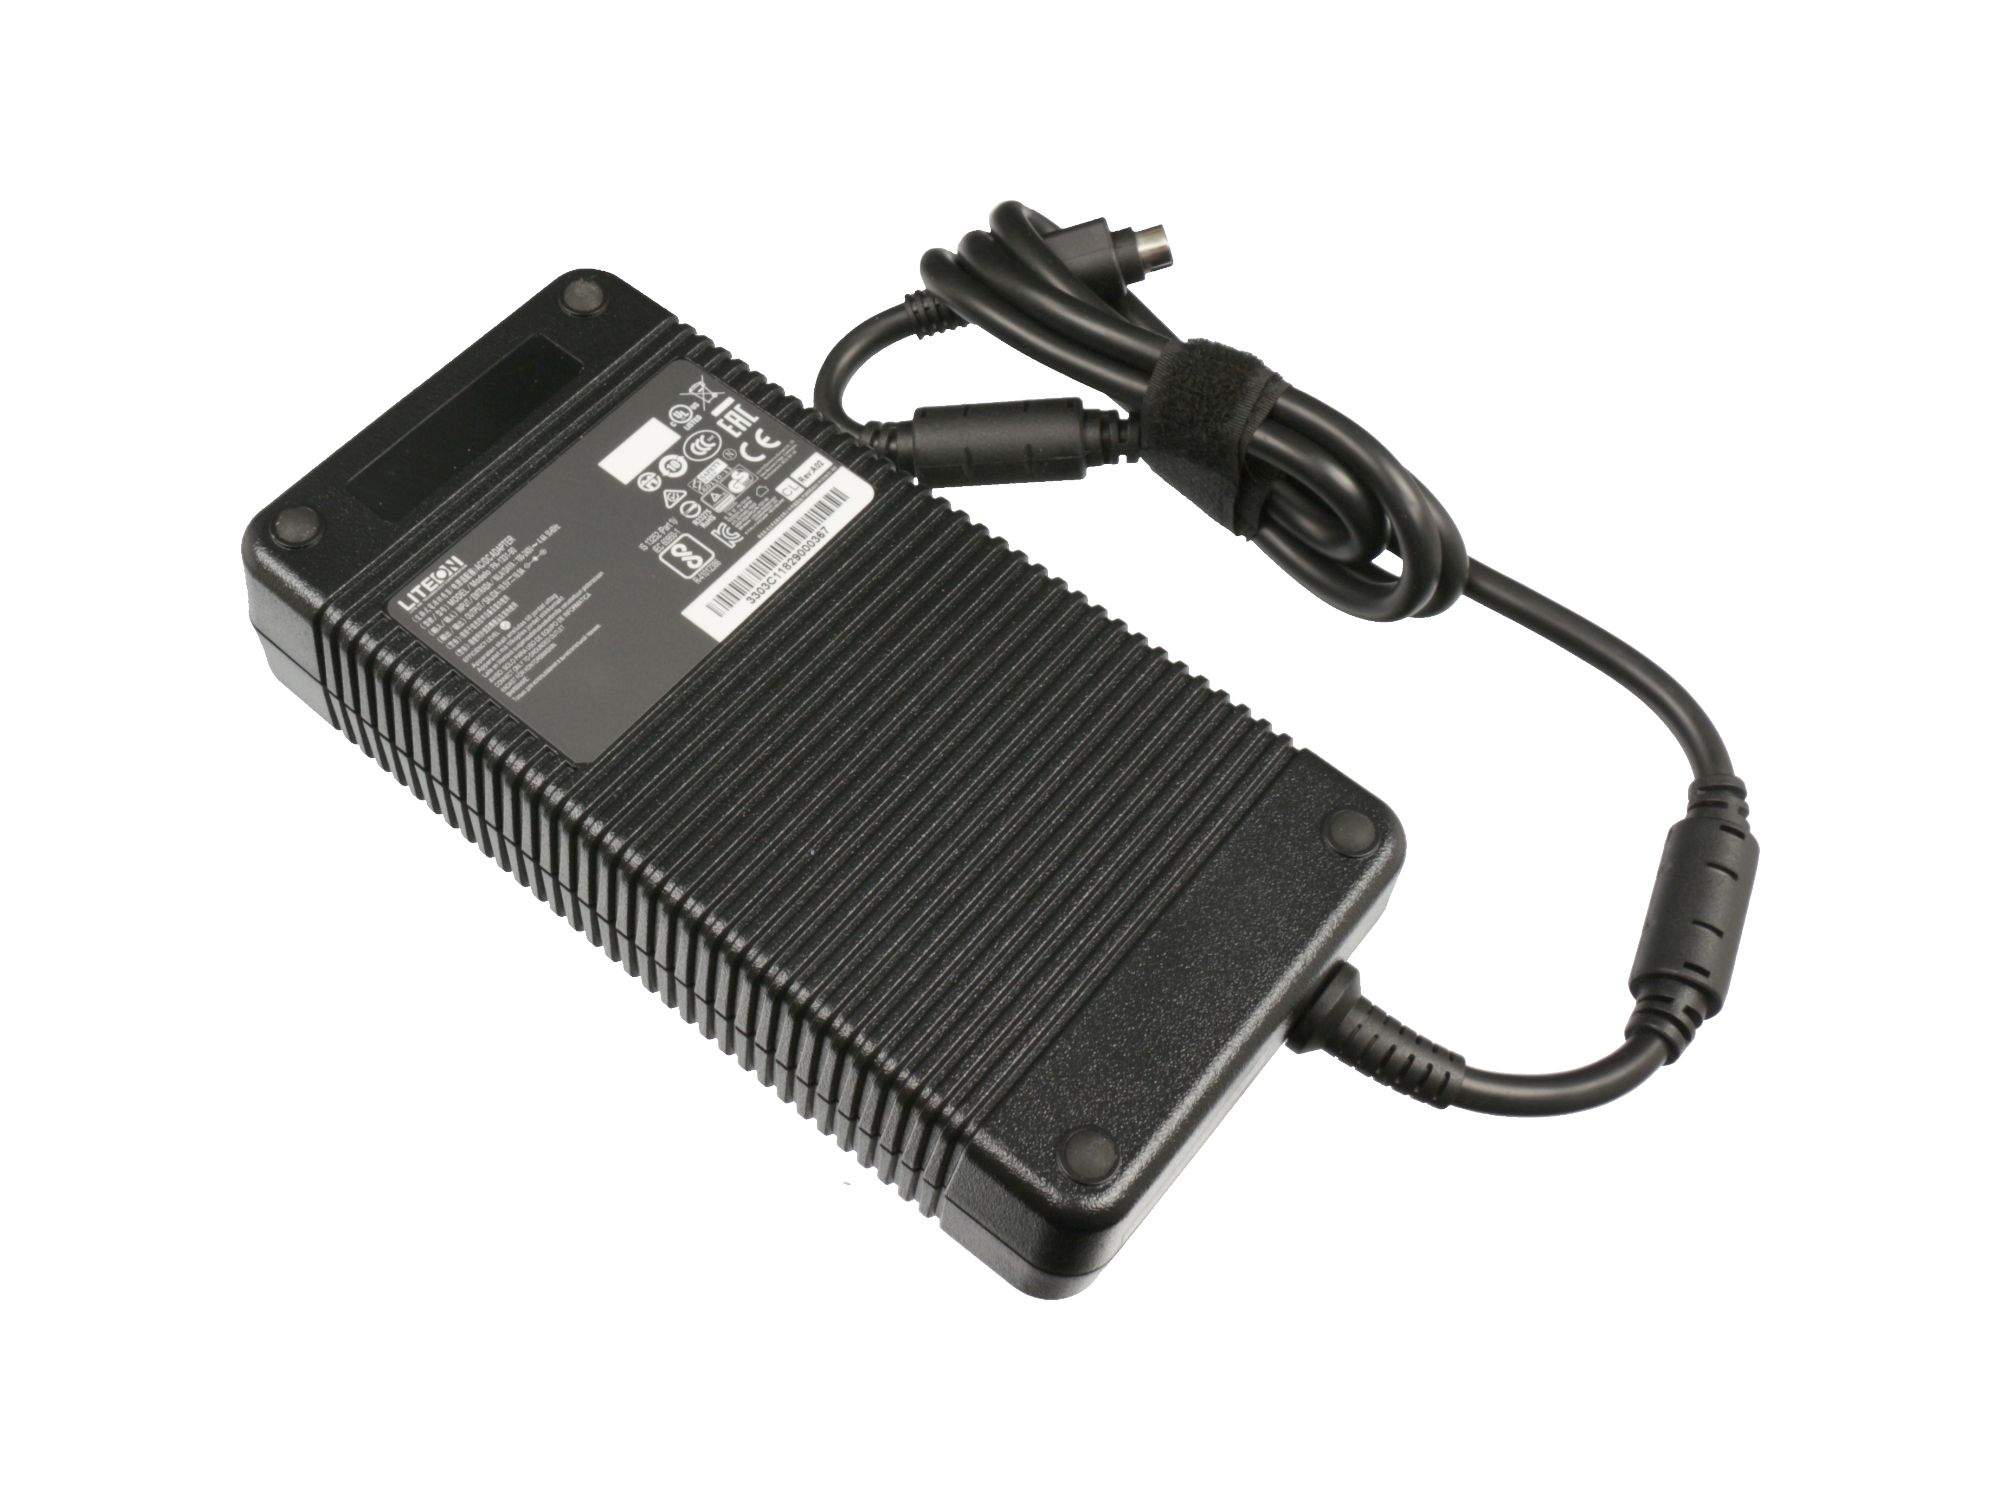 MIFCOM Netzteil 330 Watt - Original für Mifcom XG7 (P775TM1-G) (ID: 7380)